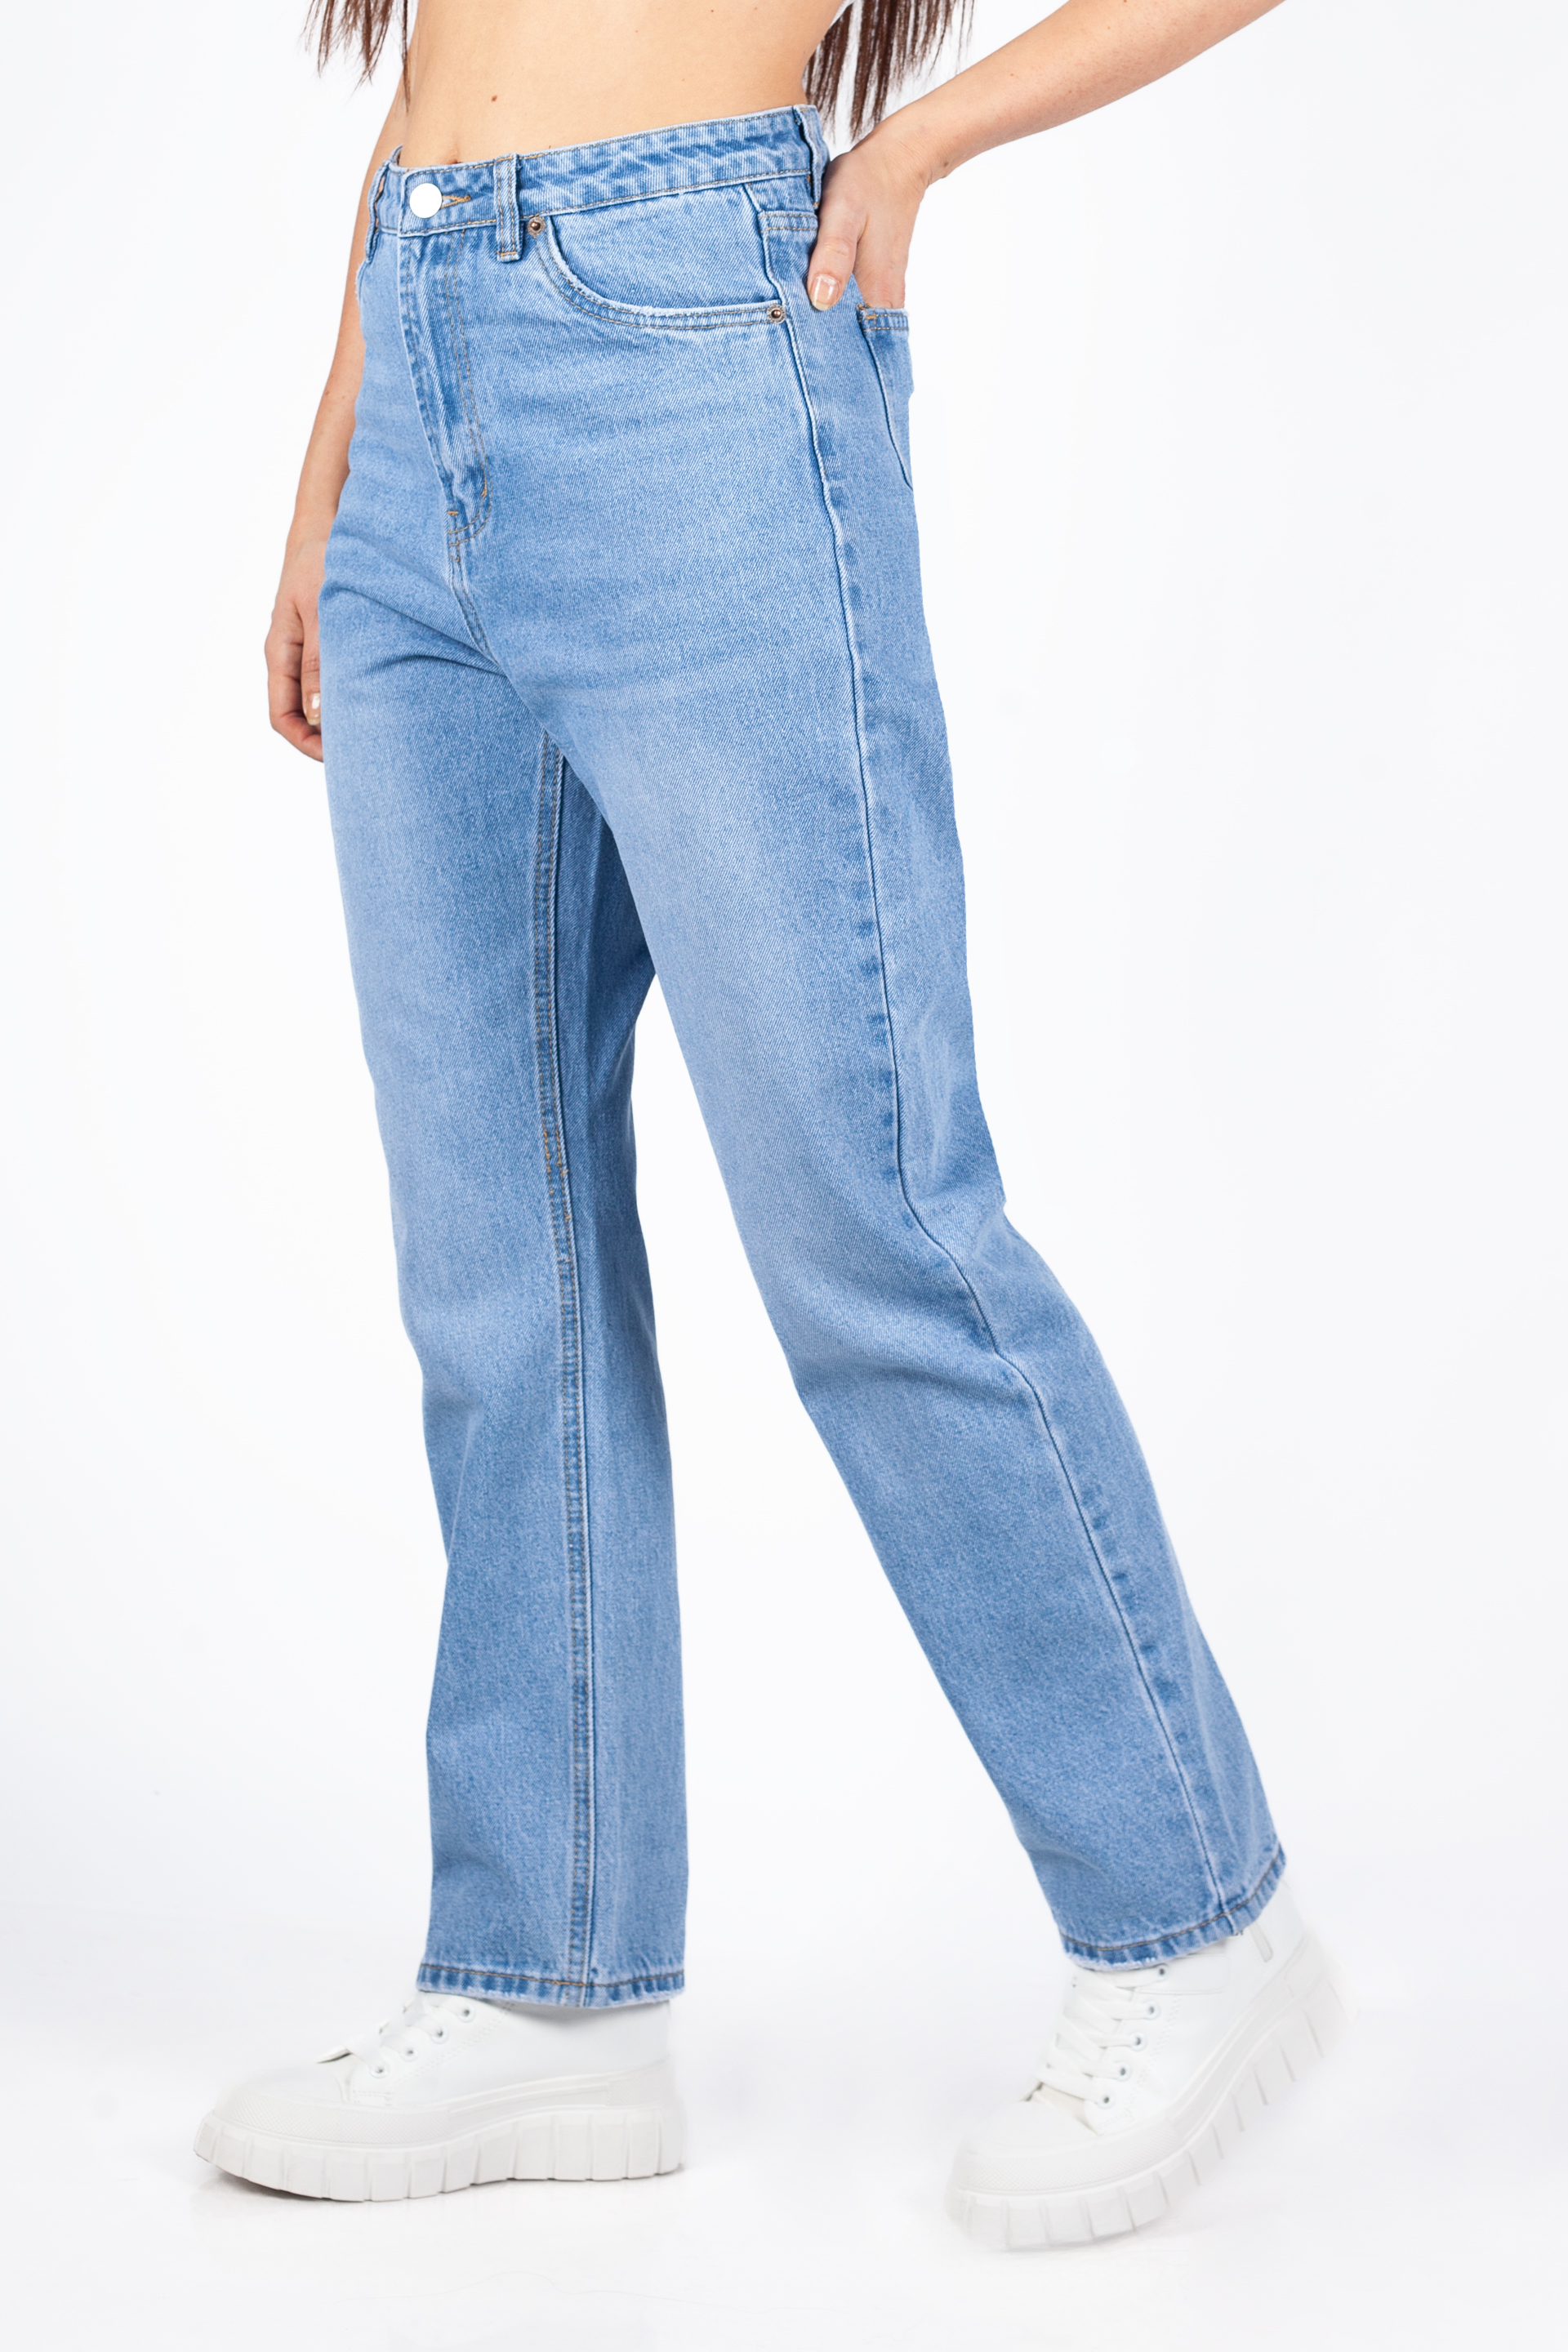 Jeans VS MISS VS7859